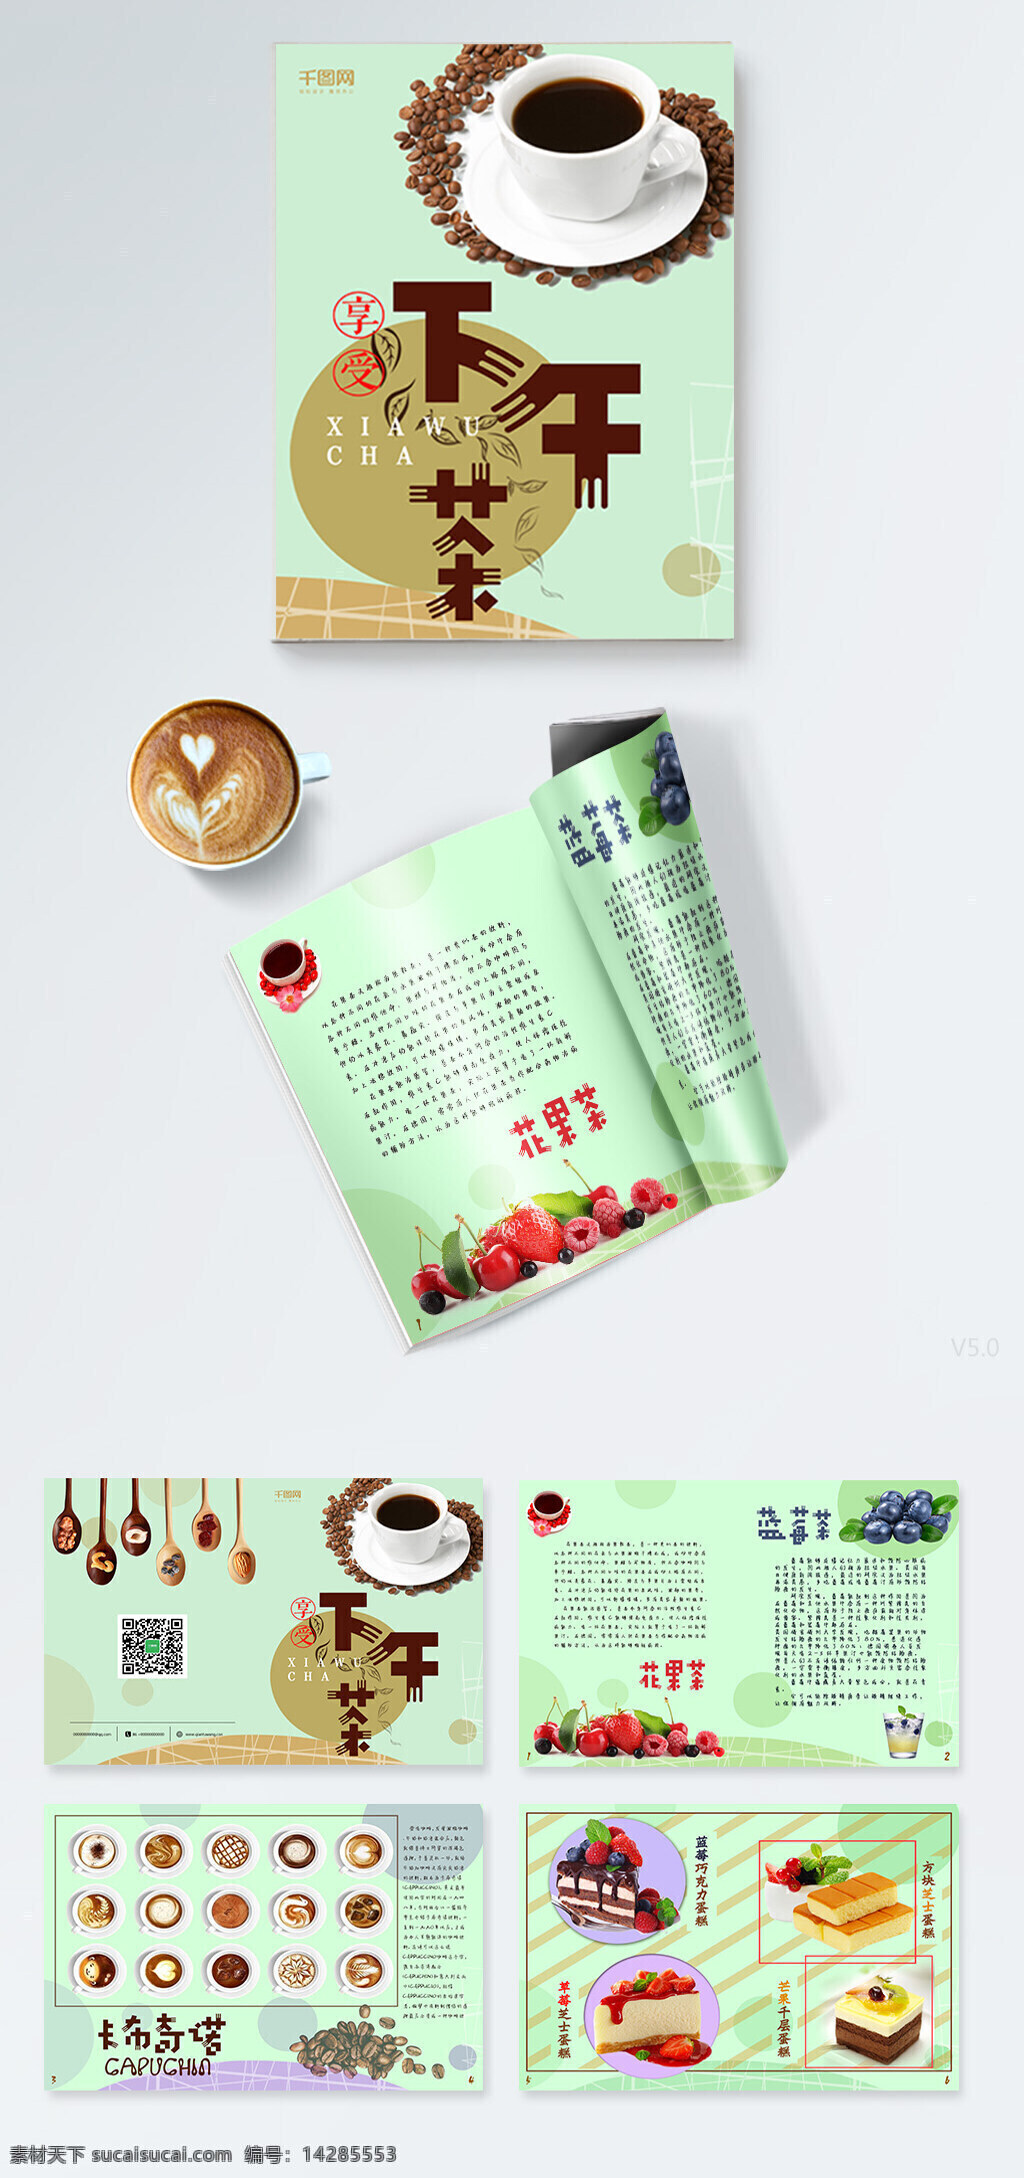 小 清新 淡雅 下午 茶 画册设计 下午茶 甜点 咖啡 卡布奇诺 蛋糕 蓝莓 浅褐色 水果 茶点